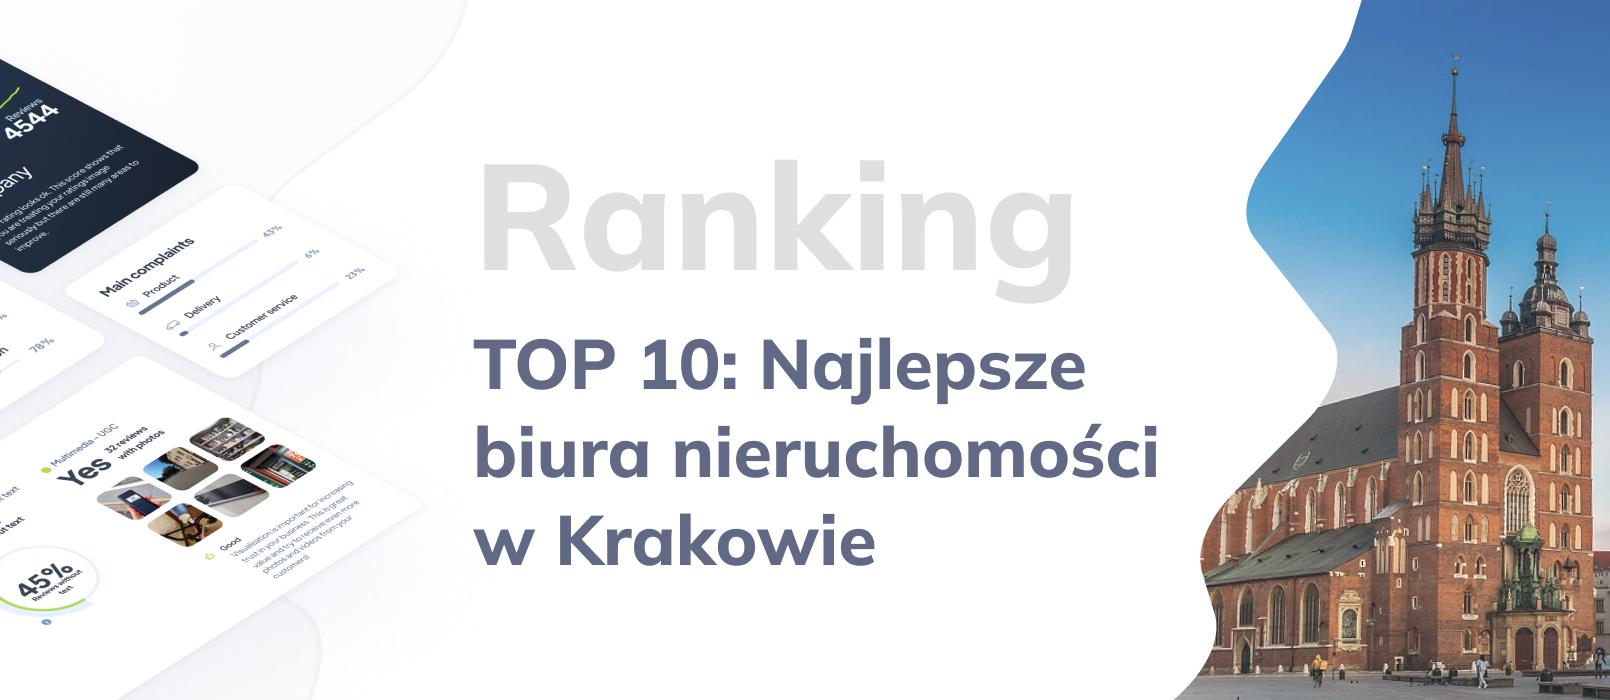 Biuro nieruchomości Kraków: TOP 10 najlepszych biur nieruchomości – ranking